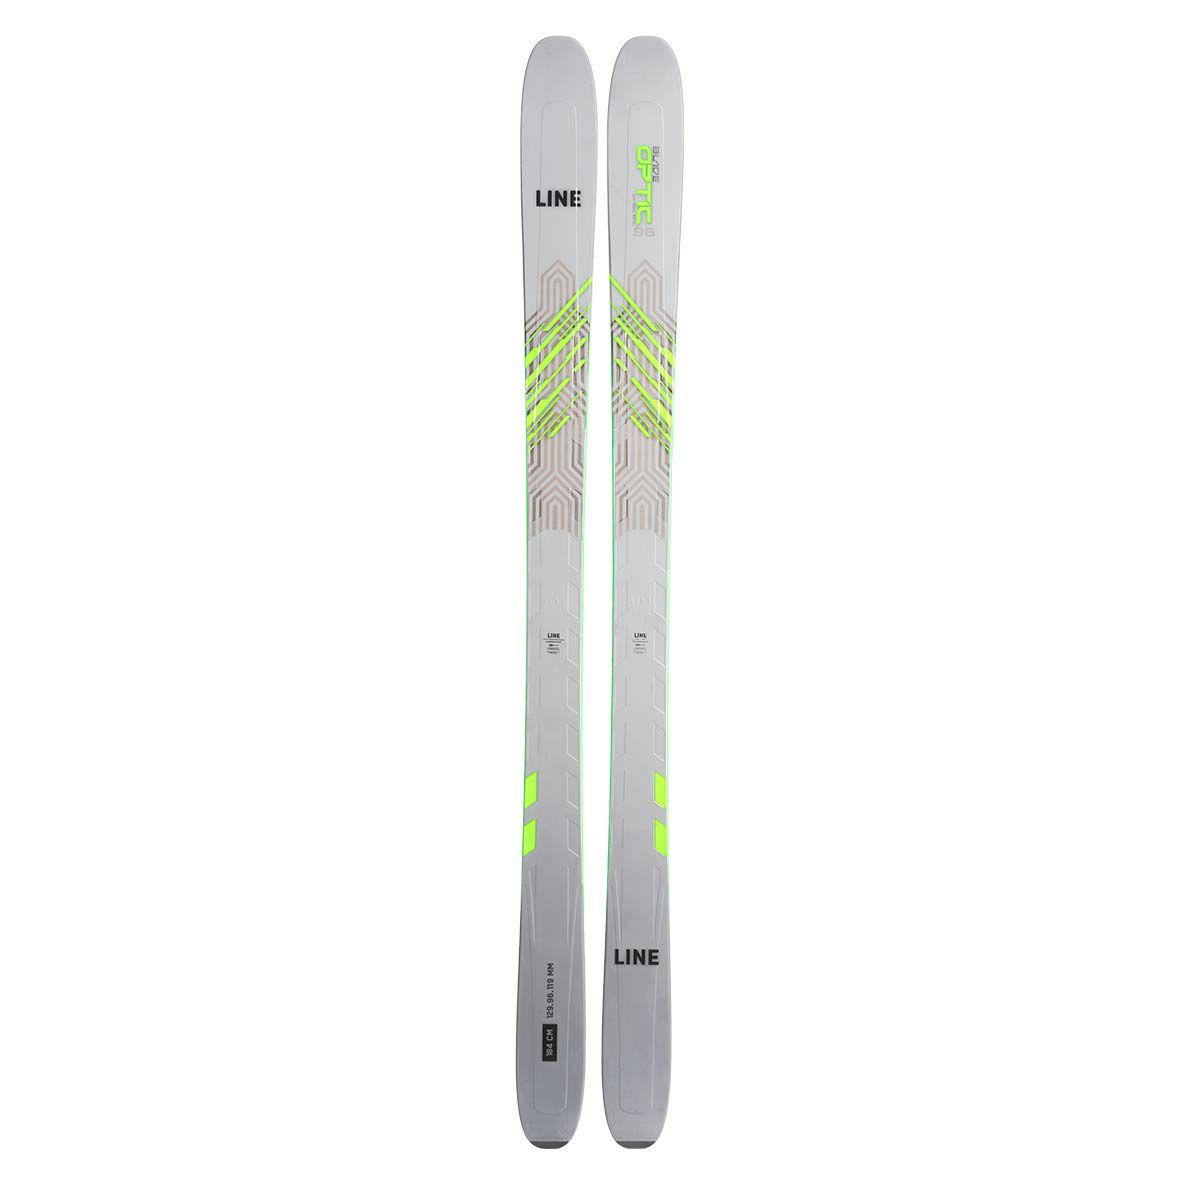 ベースエッジ-05elan スキー板/ HOTWAX済